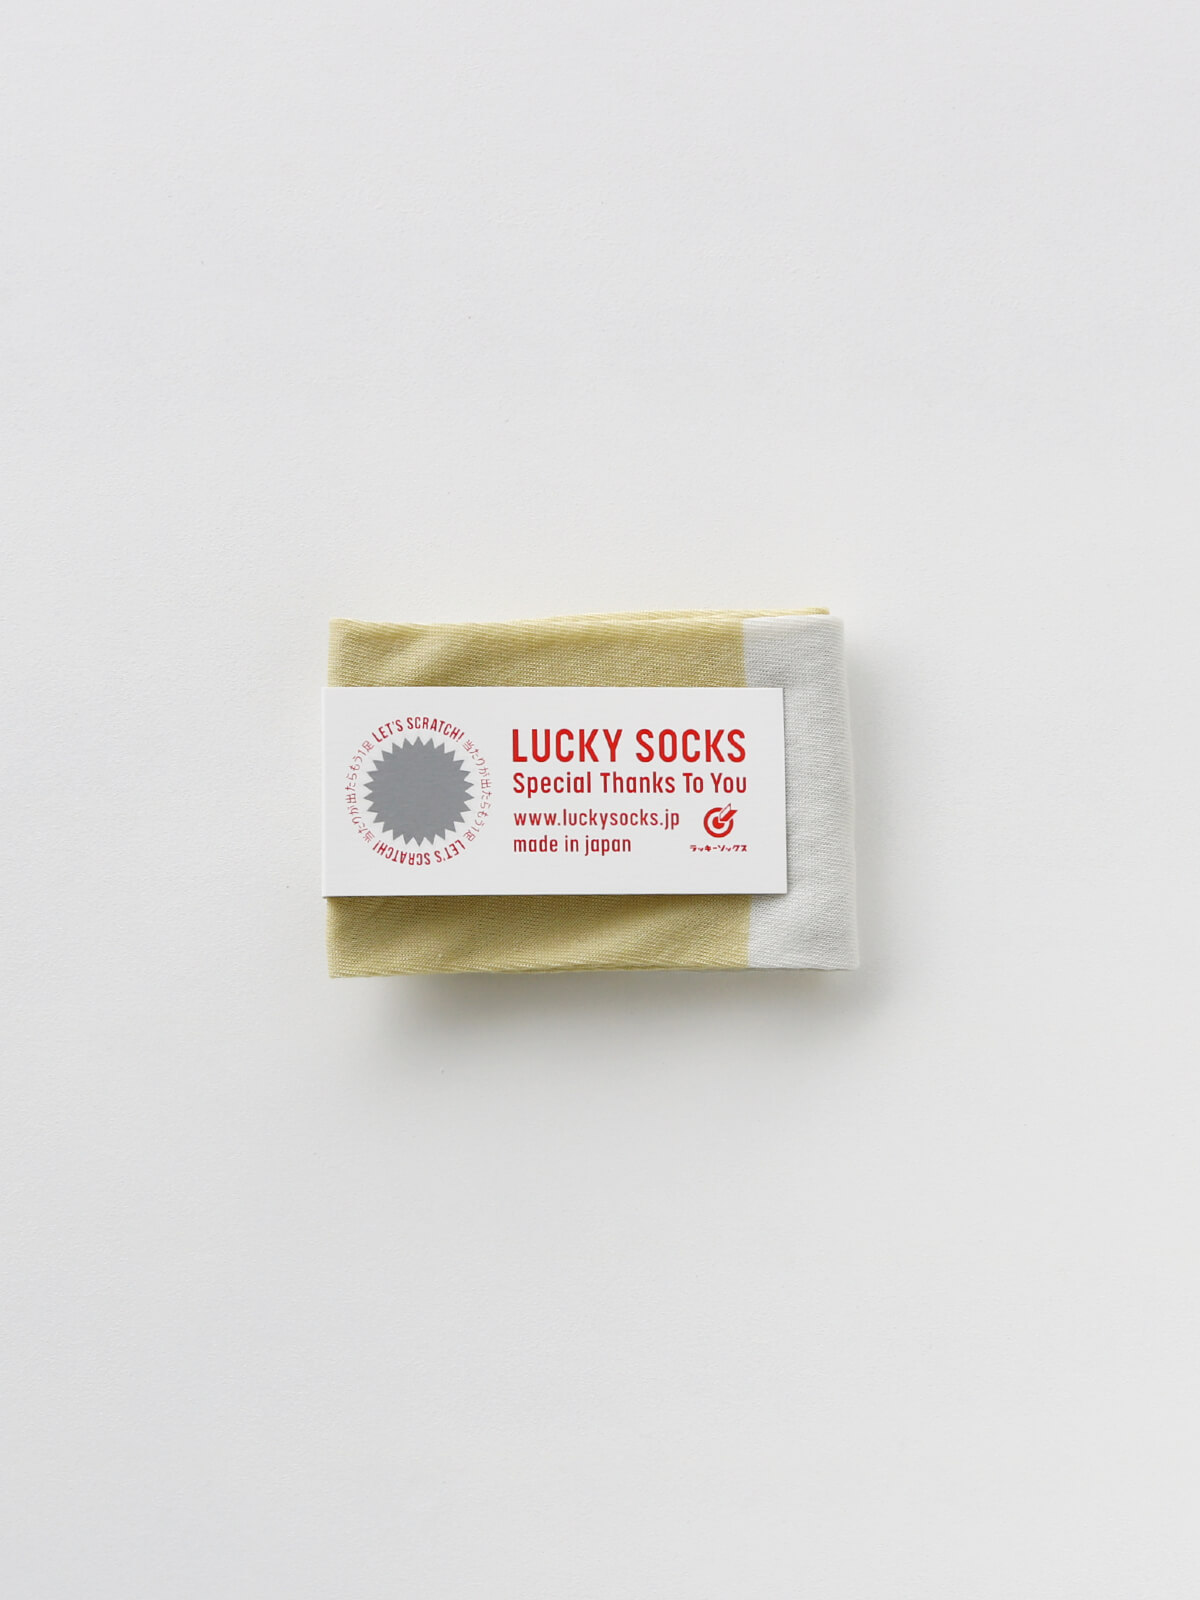 当たりつきギフト専用靴下のLUCKY SOCKS（ラッキーソックス）のSunscreen 2tone Armcover（サンスクリーン2トーンアームカバー）のペールイエロー×ミスト_1